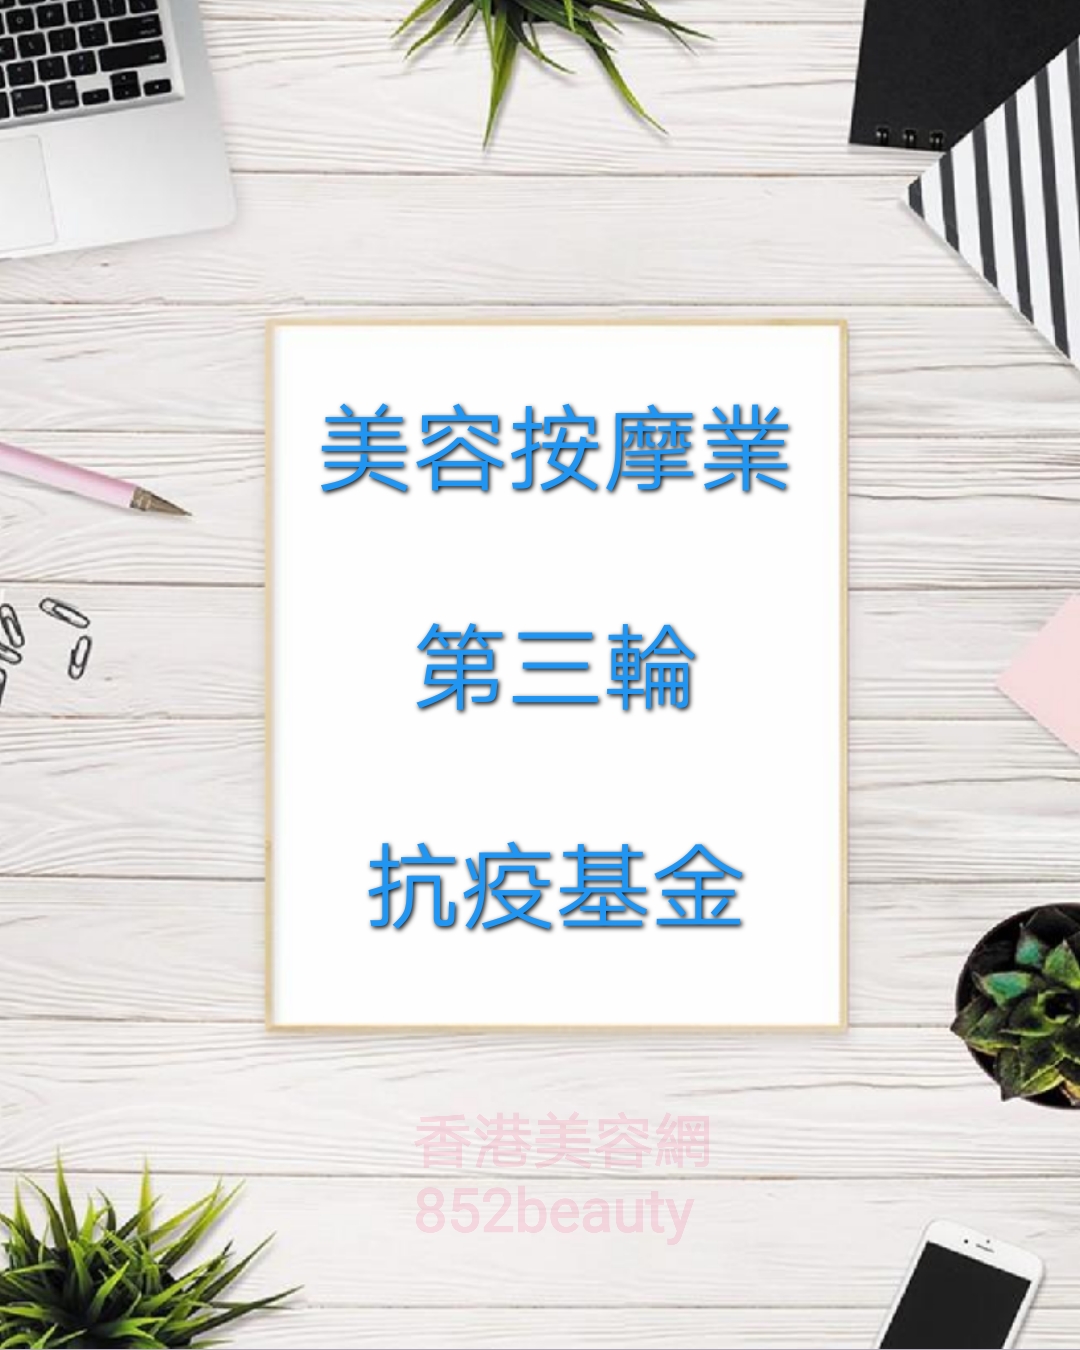 香港美容网 Hong Kong Beauty Salon 最新美容资讯: 第三輪防疫抗疫基金「美容院、按摩院及派對房間資助計劃」